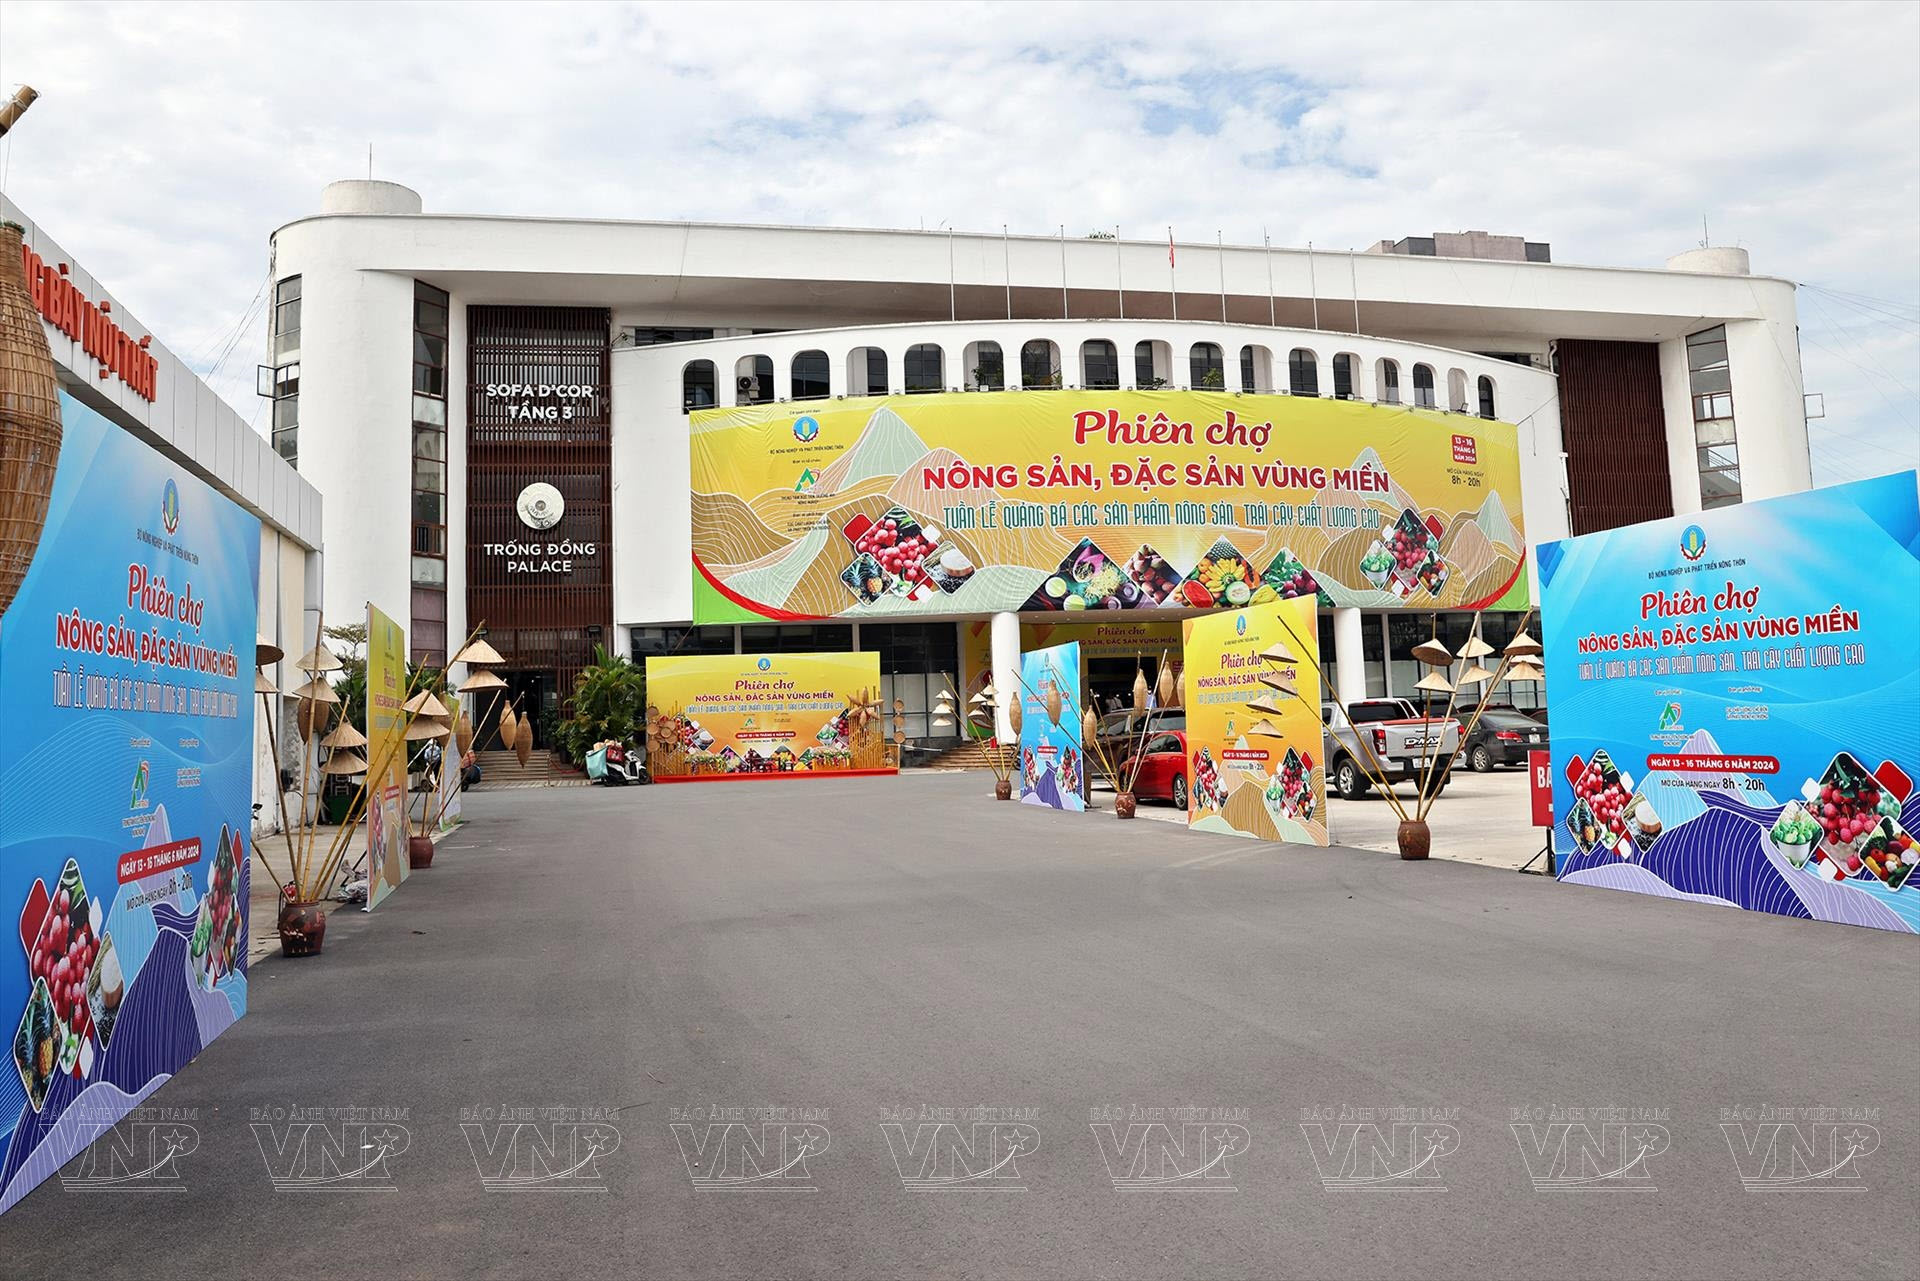 Hơn 70 gian hàng tham gia “Phiên chợ Nông sản, Đặc sản vùng miền” tại Hà Nội